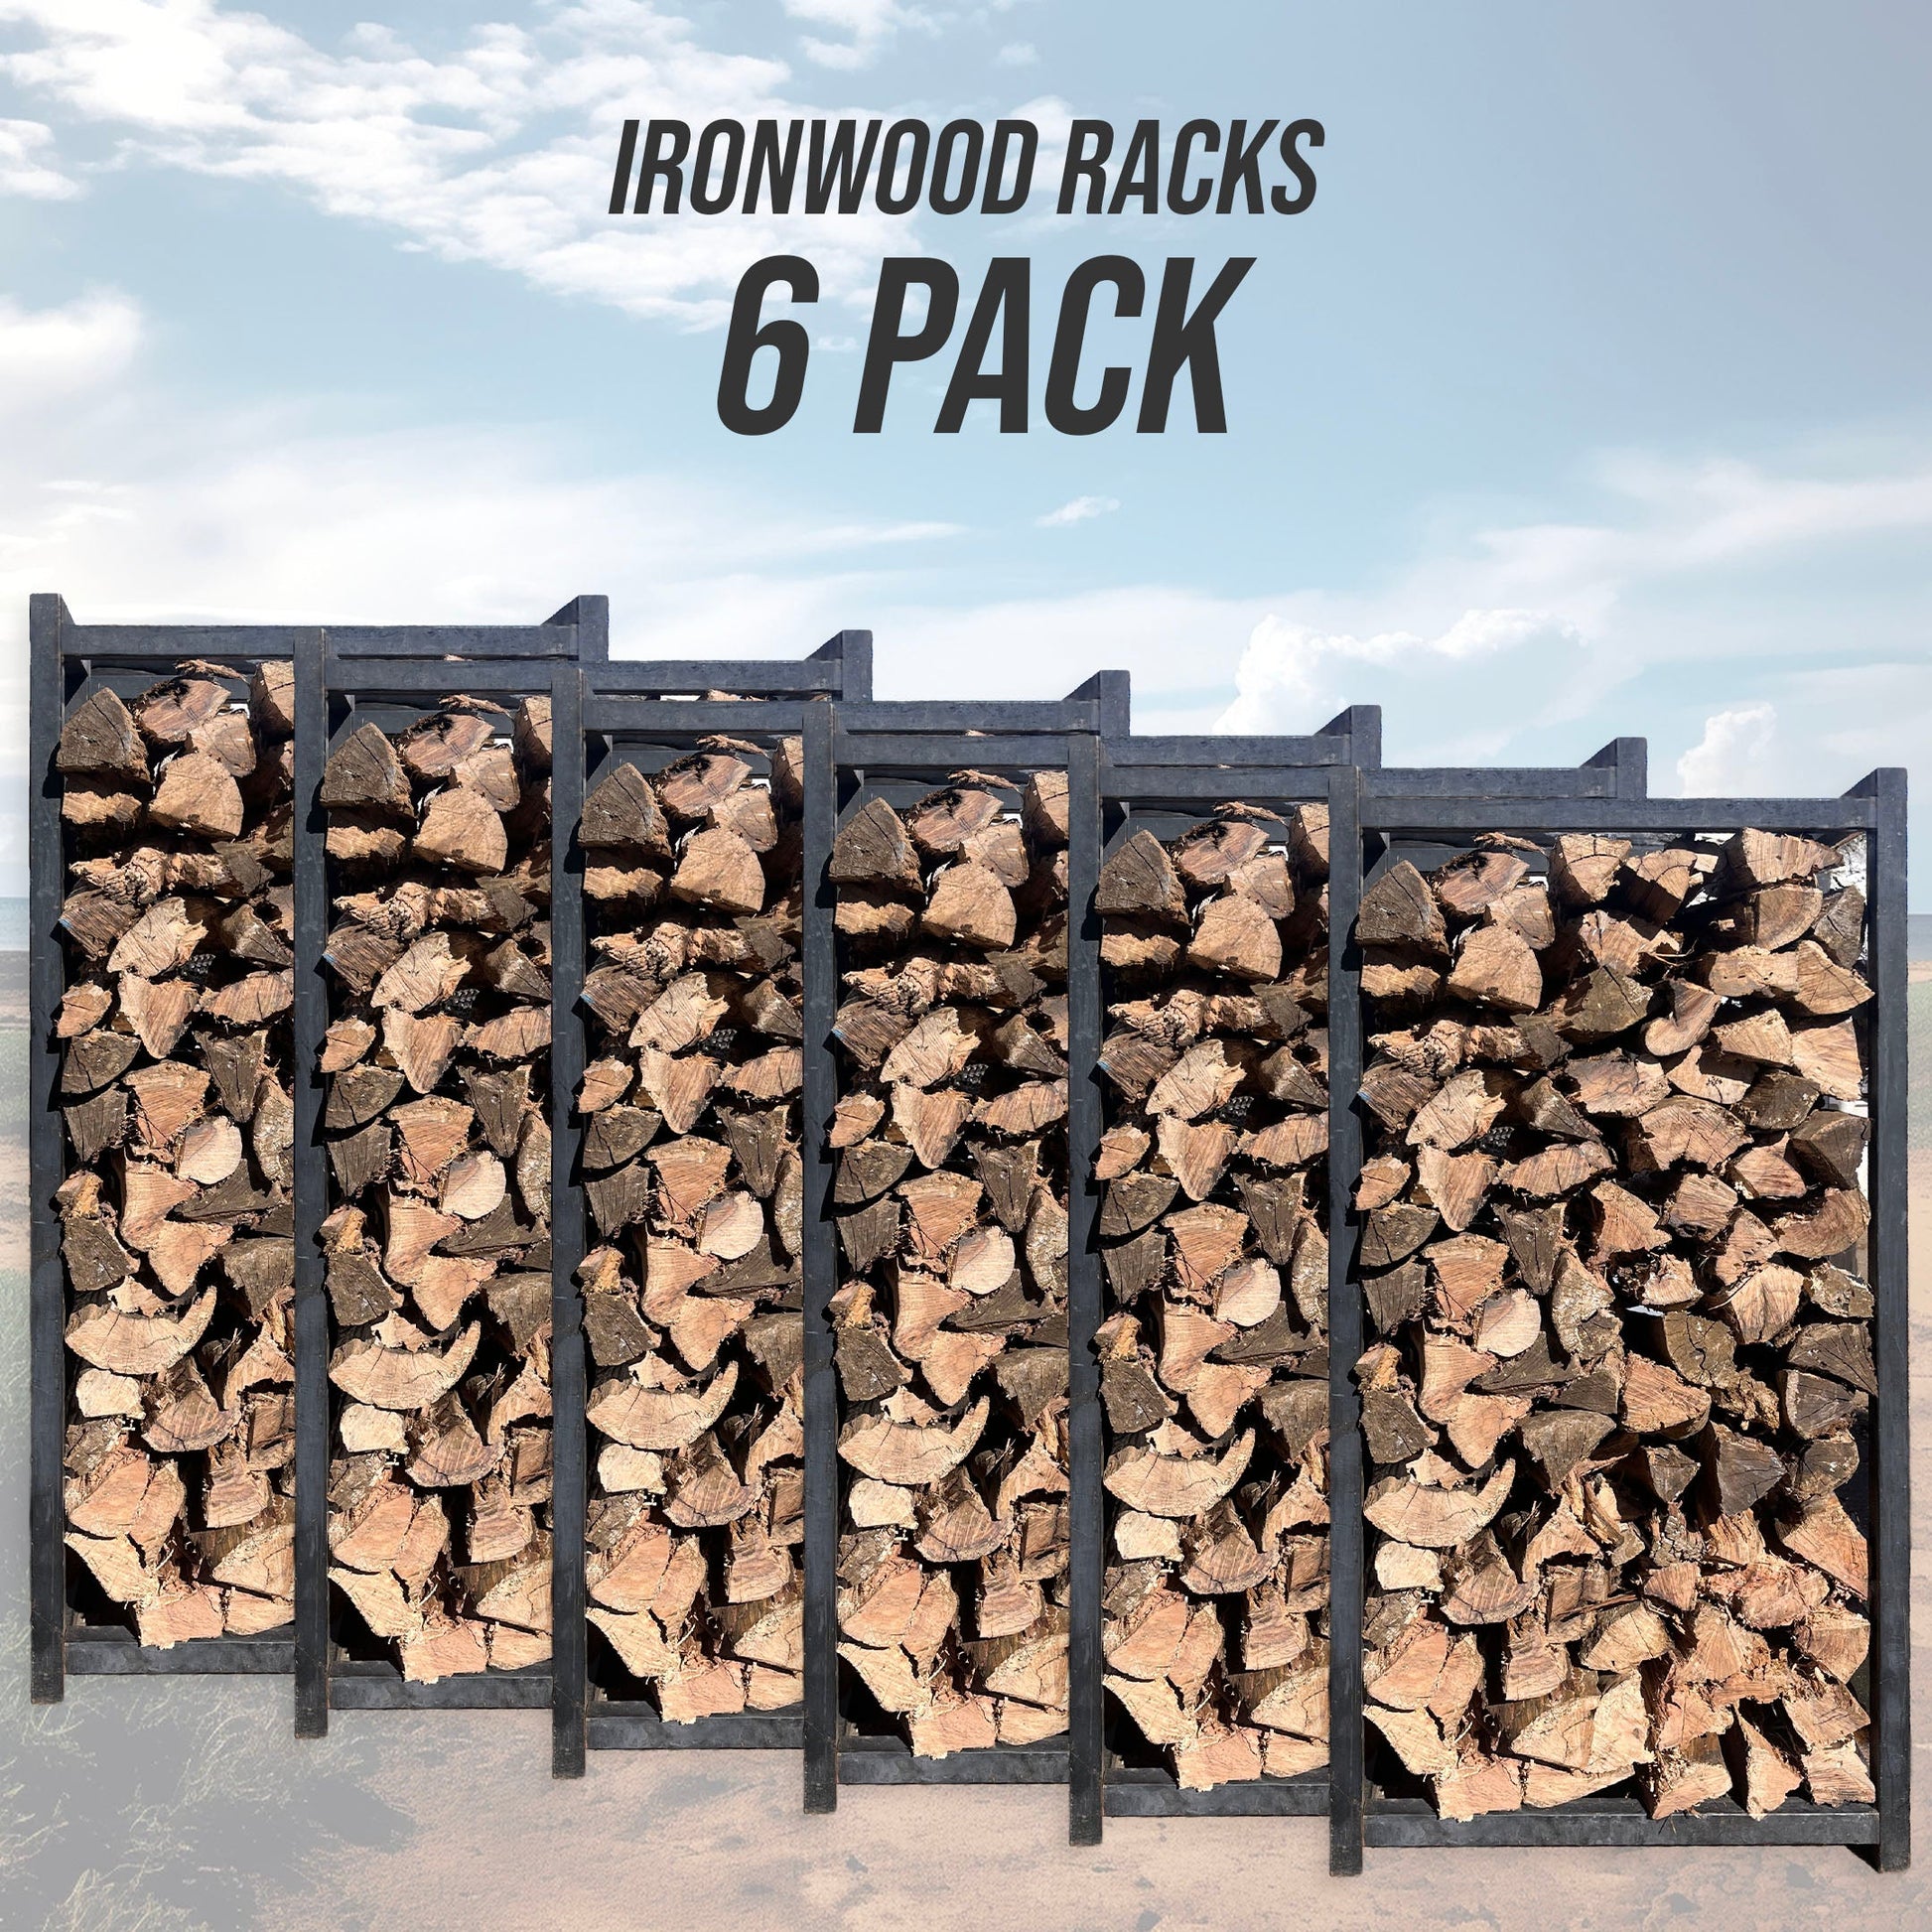 Ironwood Bundle